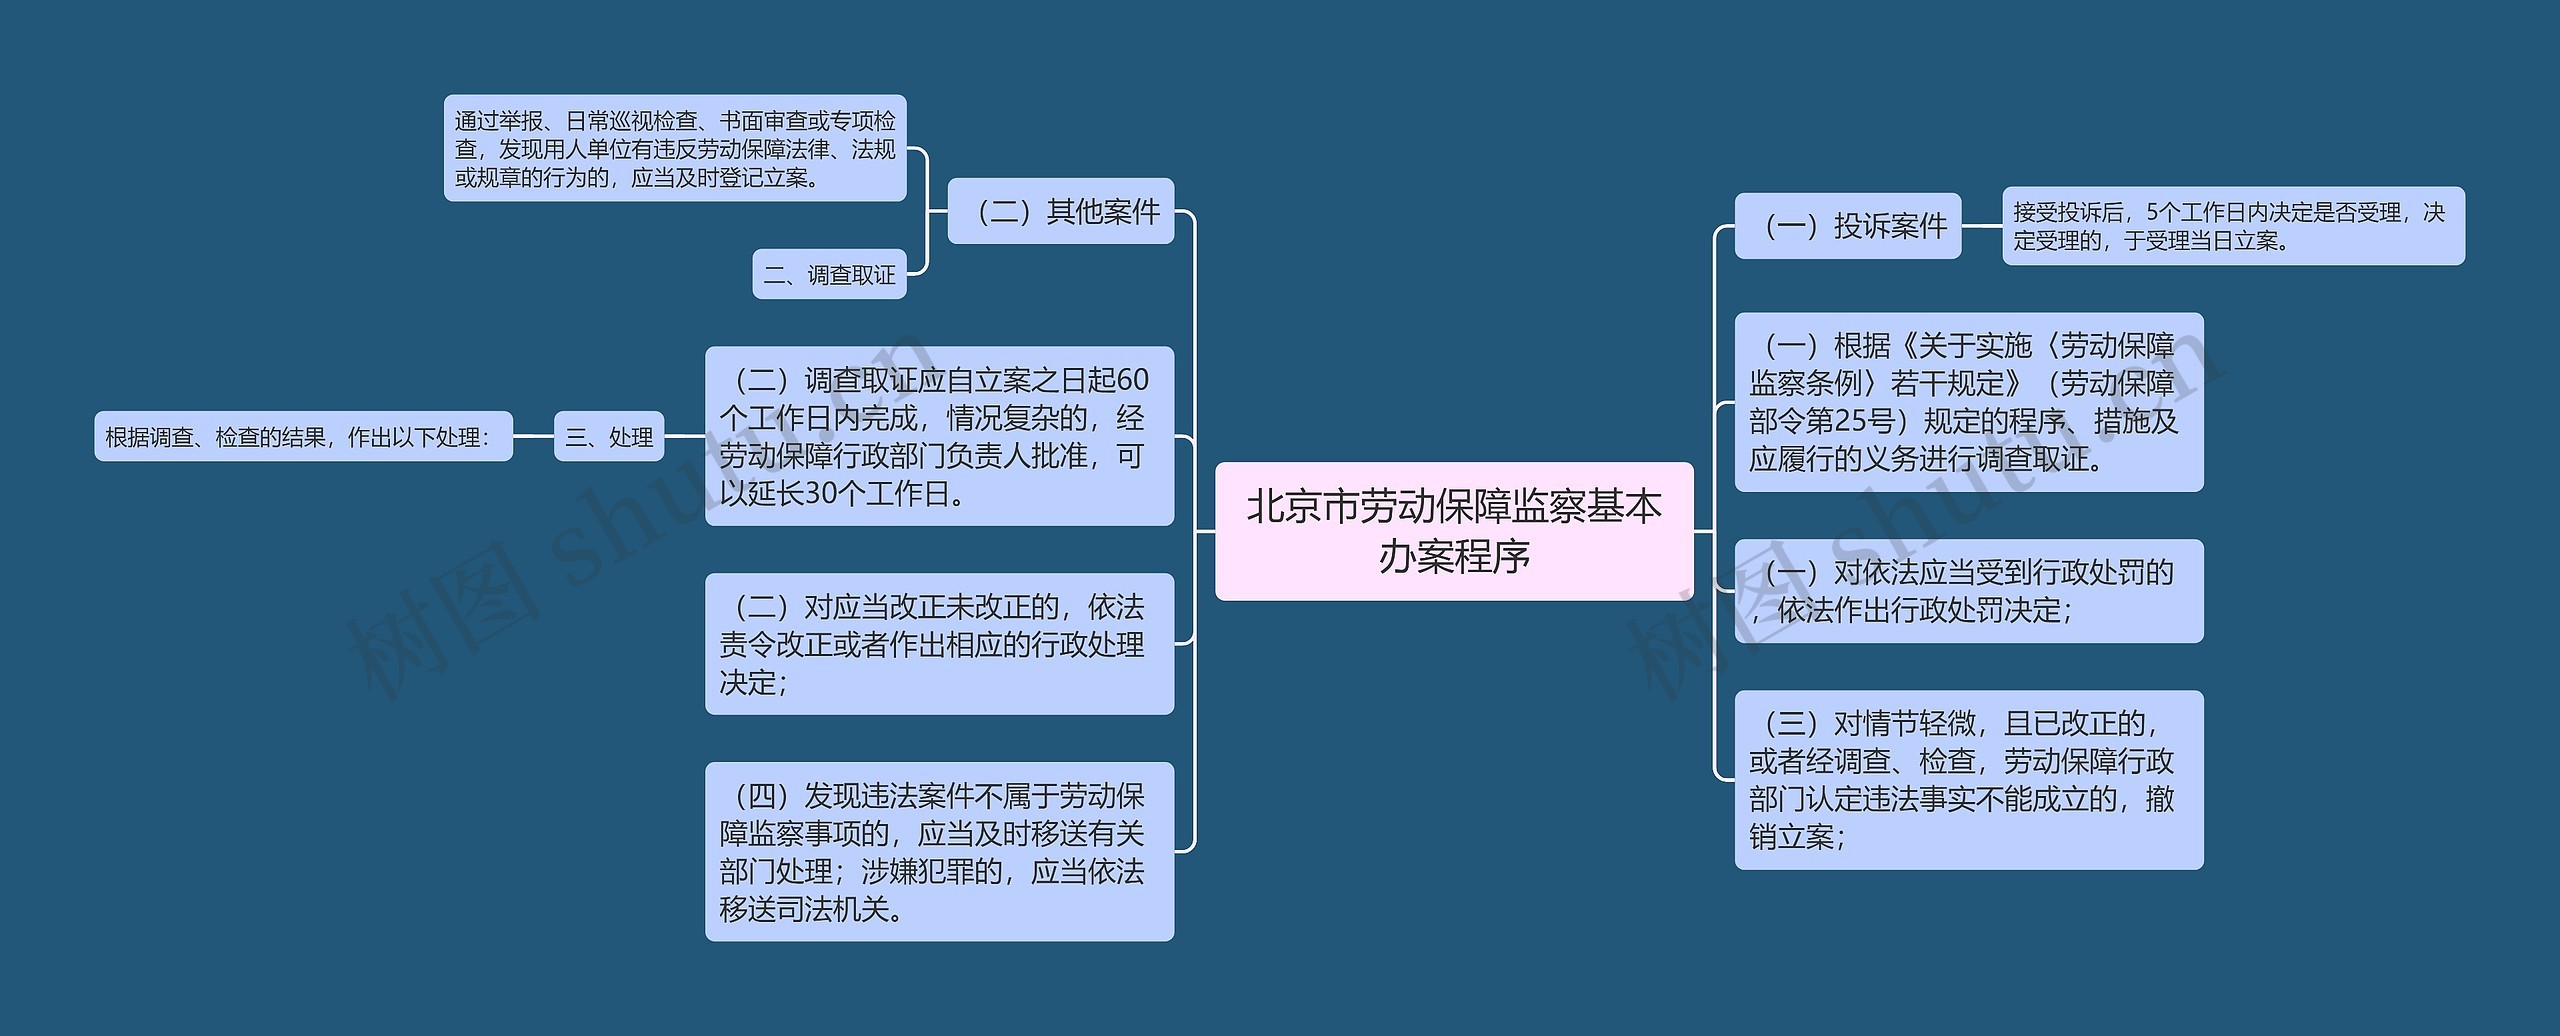 北京市劳动保障监察基本办案程序思维导图